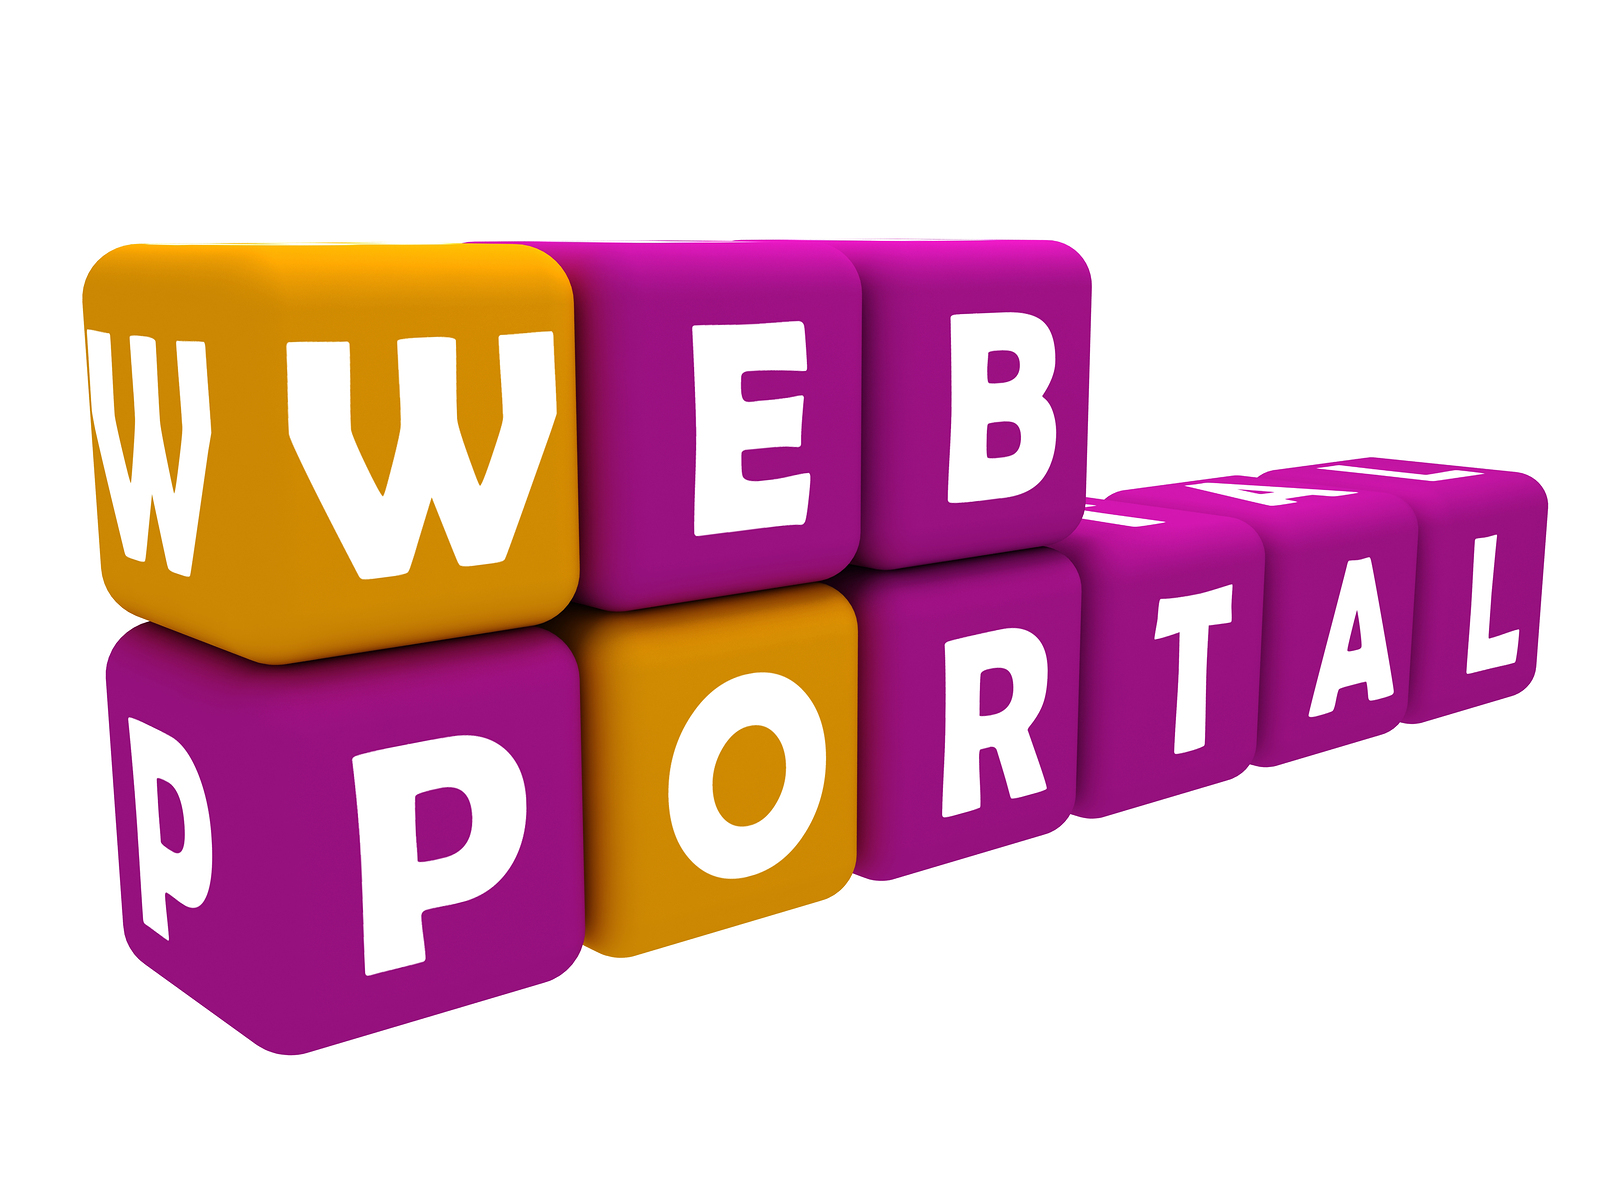 Web portal development